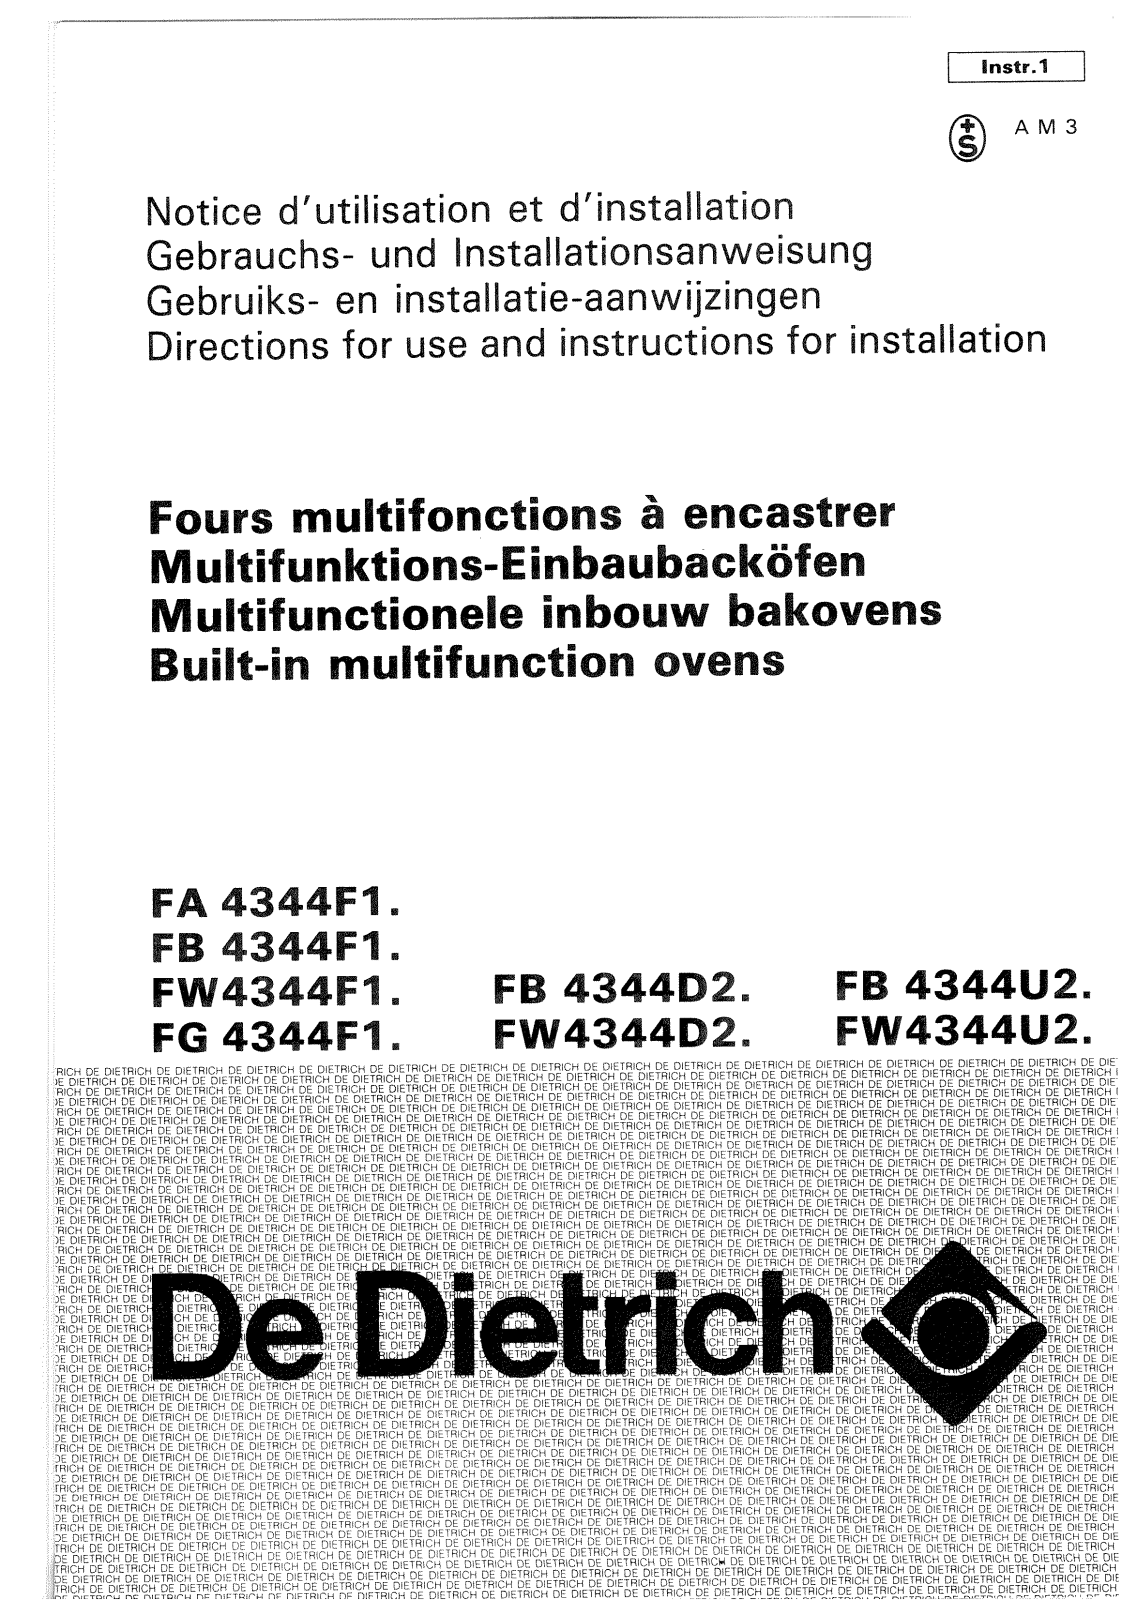 De dietrich FA4344J2, FG4344J2, FW4344J2, FA4344F1, FB4344J2 User Manual